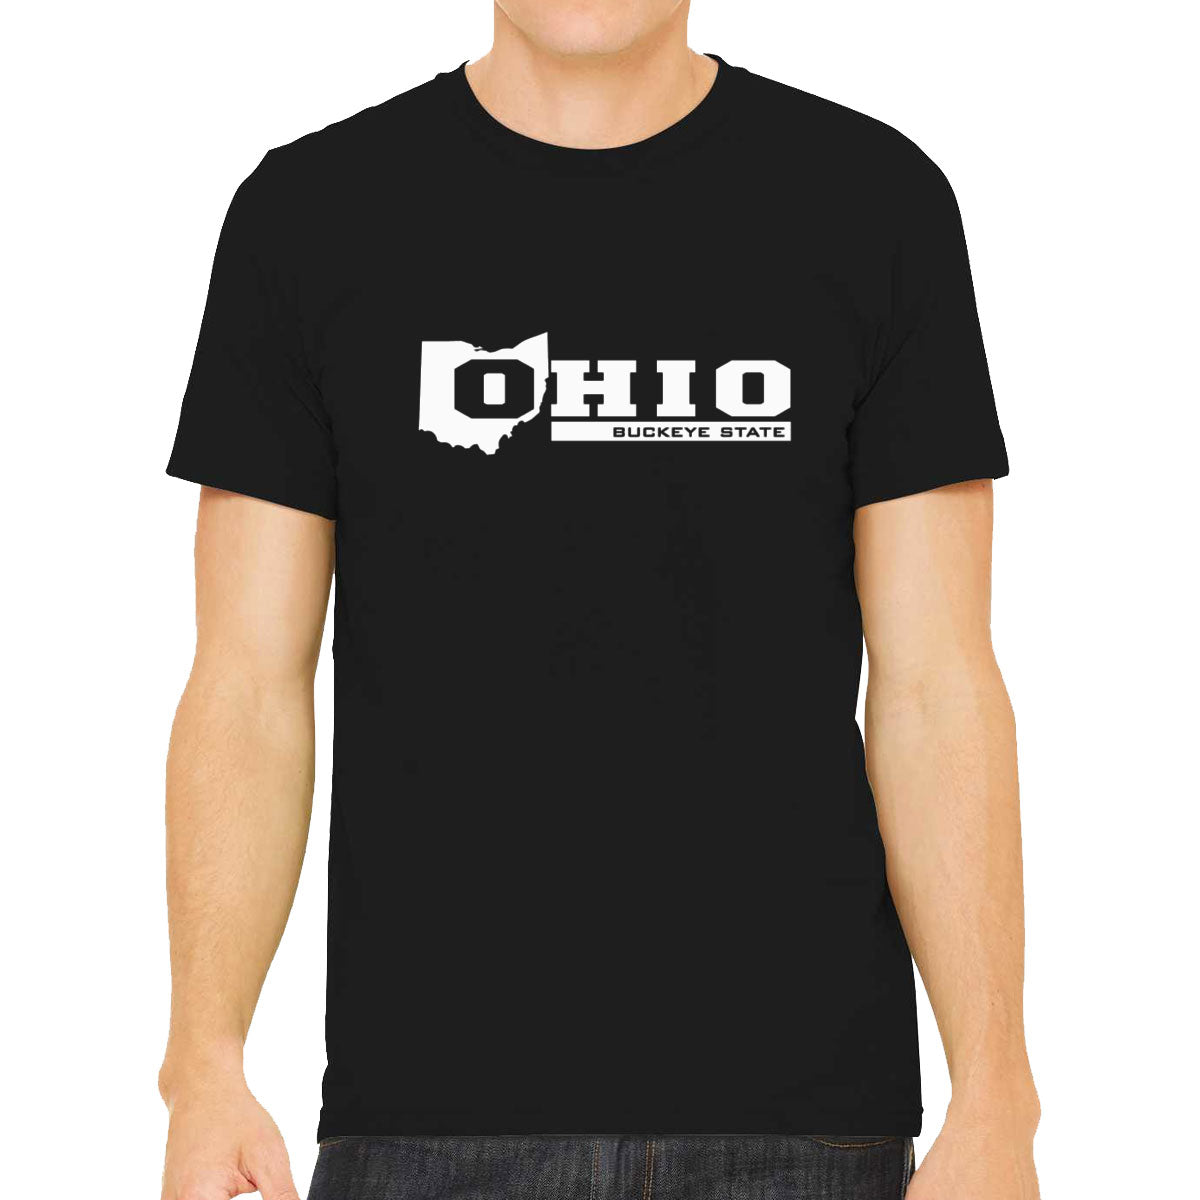 Ohio Buckeye State Men's T-shirt